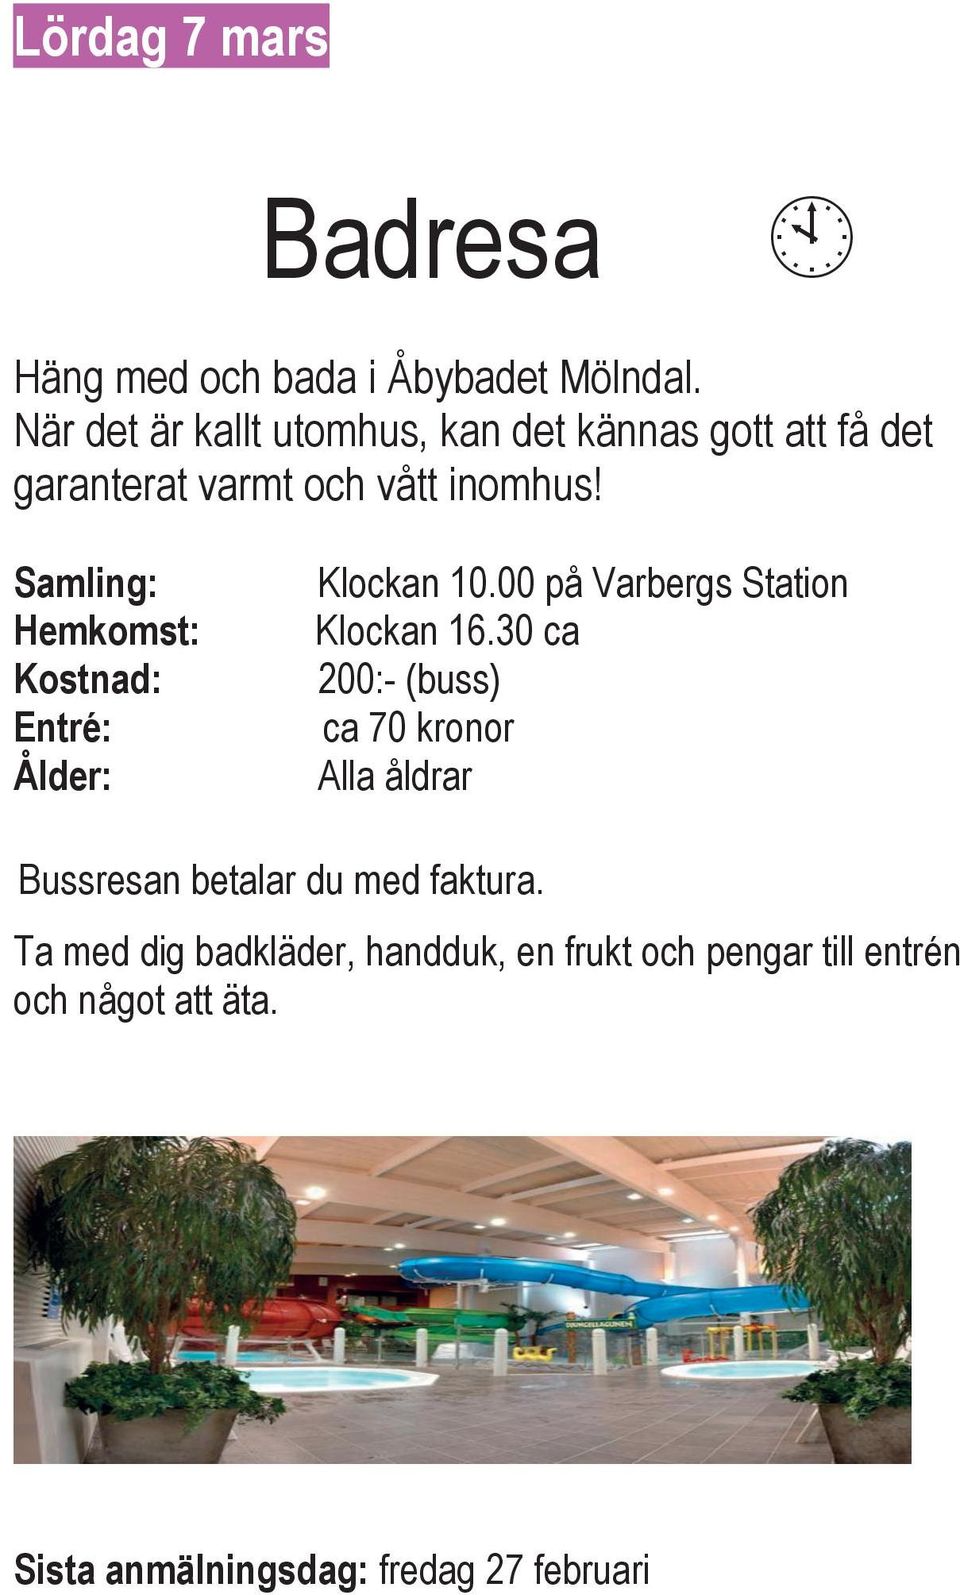 Samling: Hemkomst: Kostnad: Entré: Ålder: Klockan 10.00 på Varbergs Station Klockan 16.